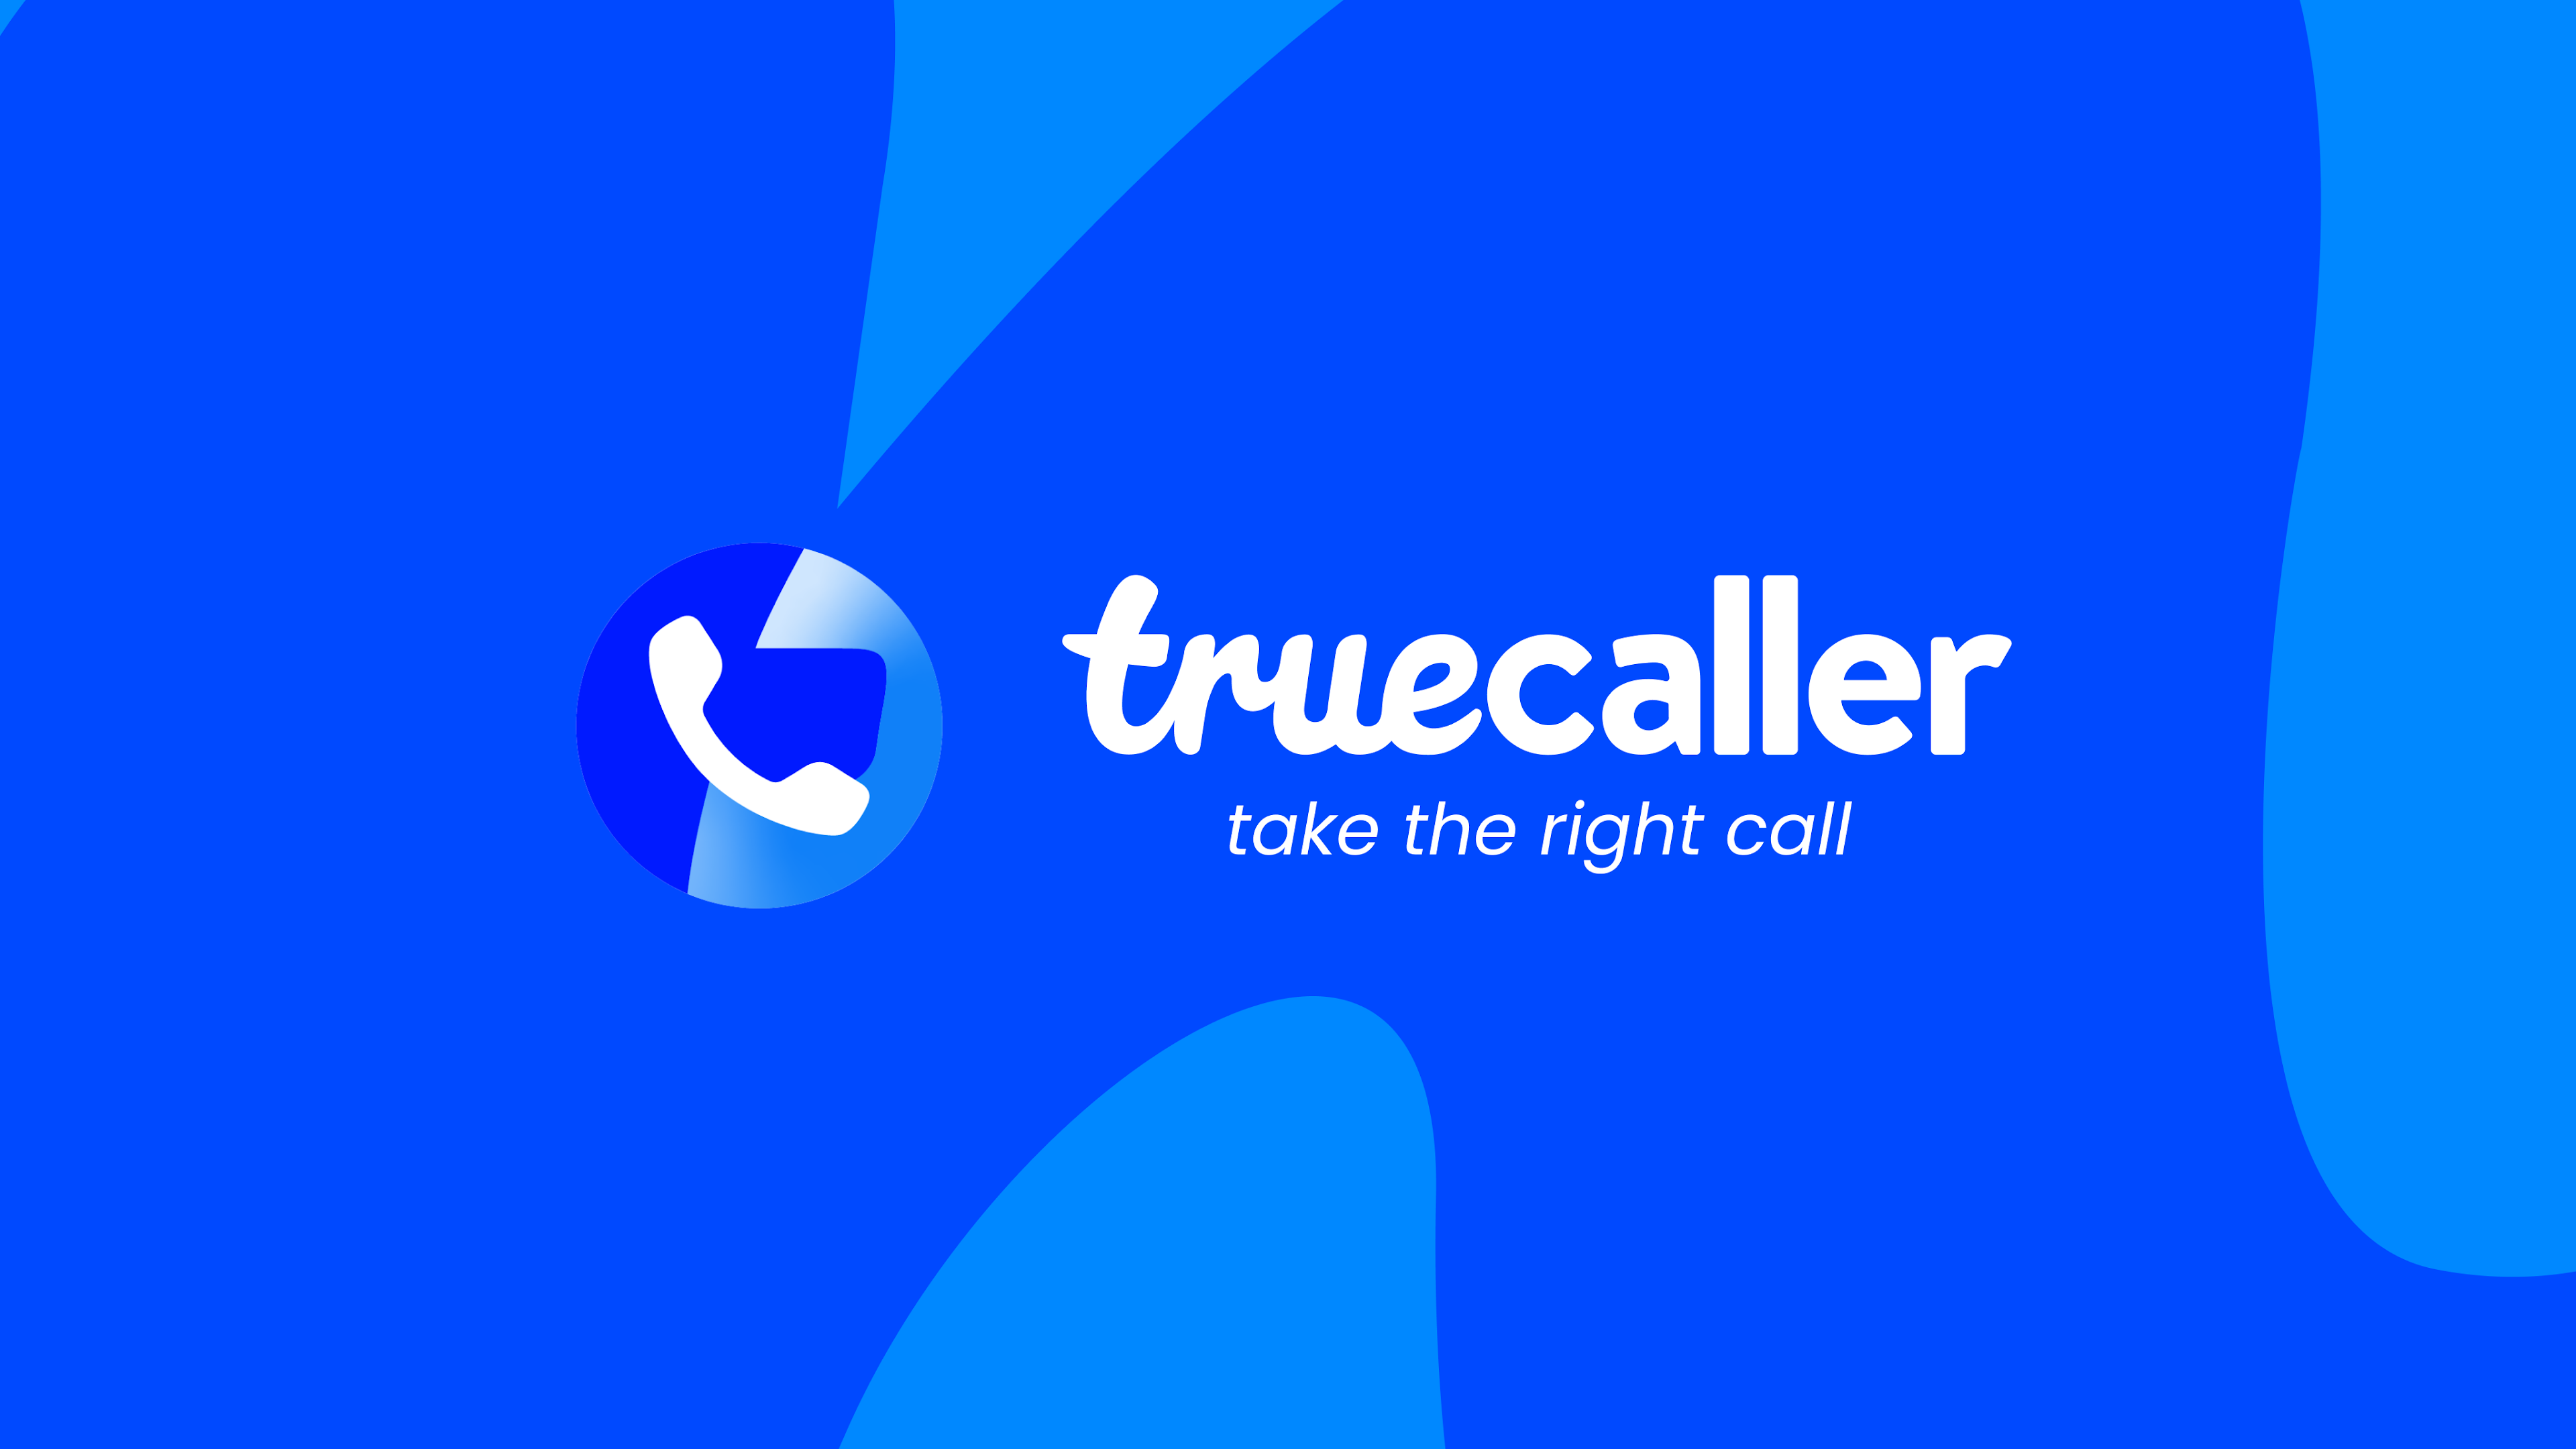 Spendete il vostro tempo in modo più efficiente: Il servizio di rilevamento delle chiamate anti-spam di Truecaller consente di creare il proprio modello vocale AI per rispondere alle chiamate spam.